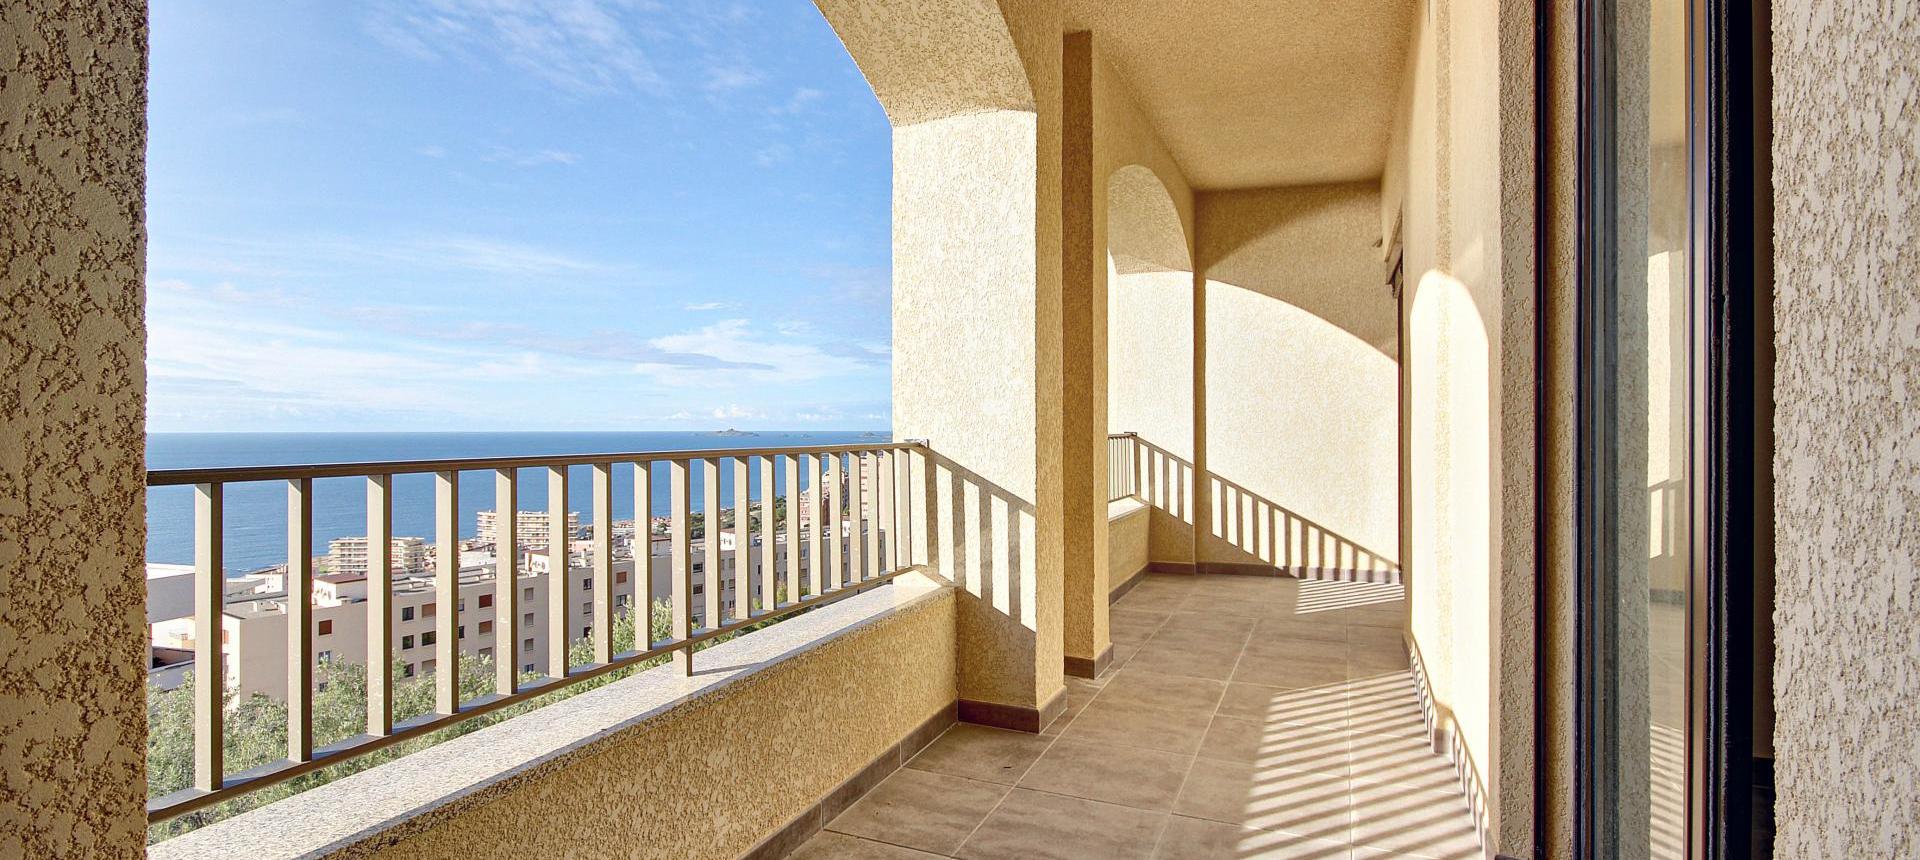 En Corse,à Ajaccio, sur la route des Sanguinaires, Vente d'un appartement de type F3 de 73 m²  avec terrasse et  vue mer